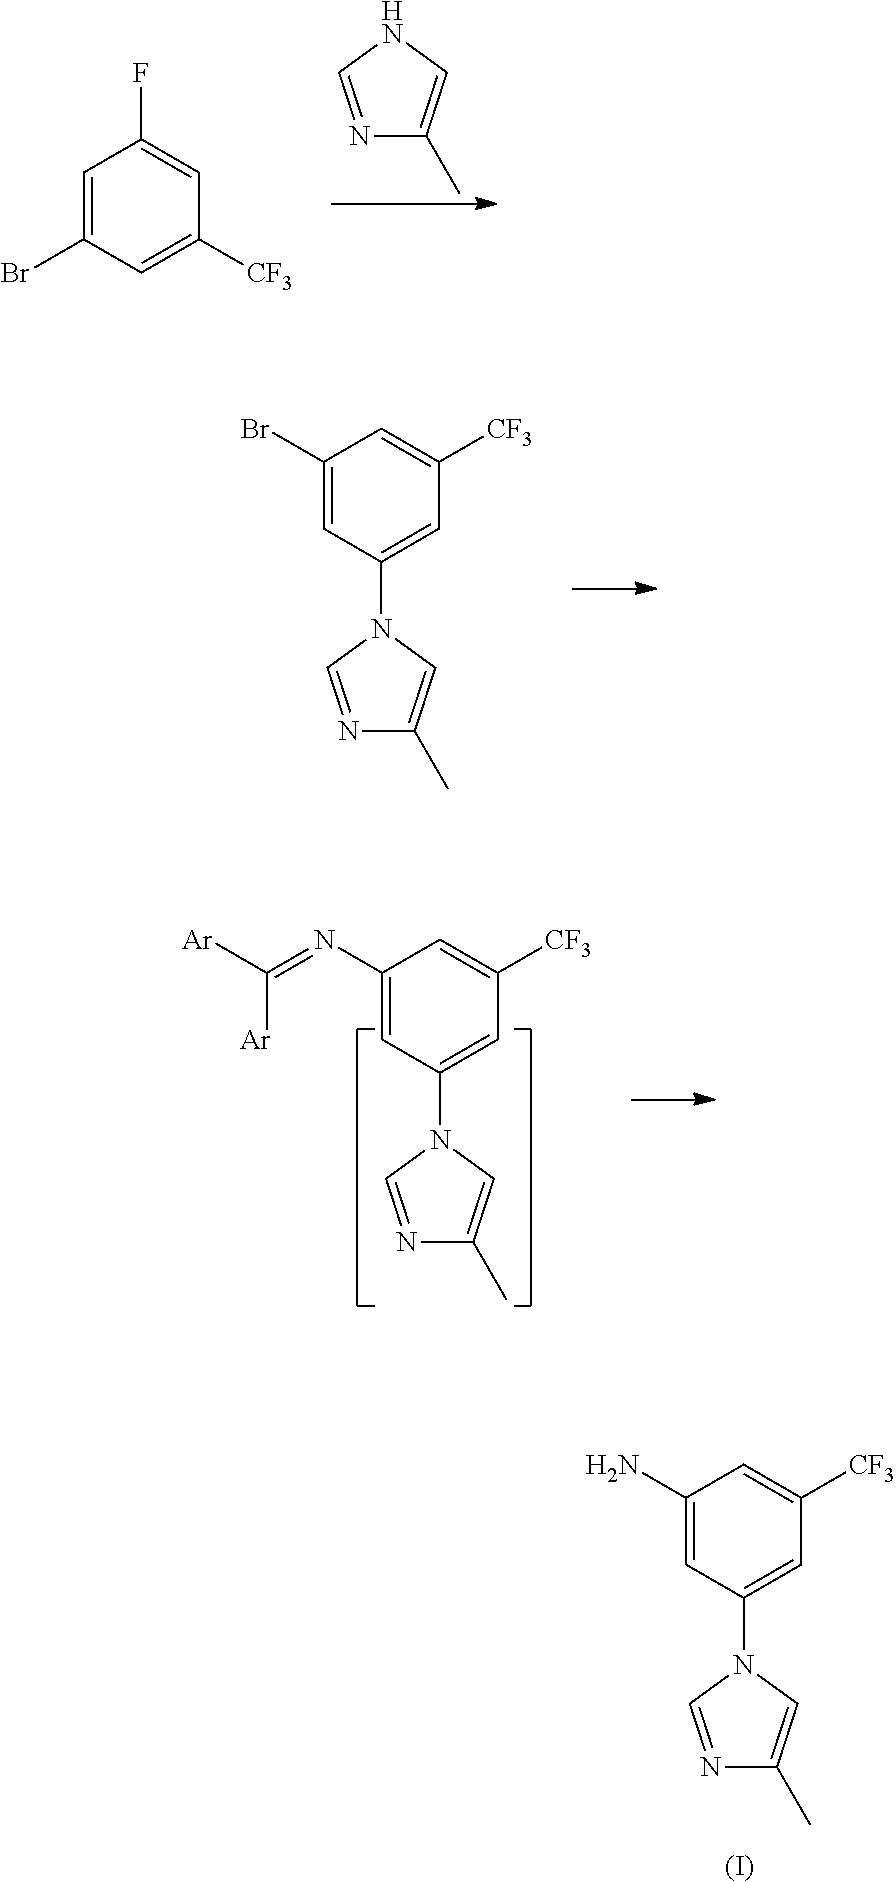 Method for preparing nilotinib intermediate